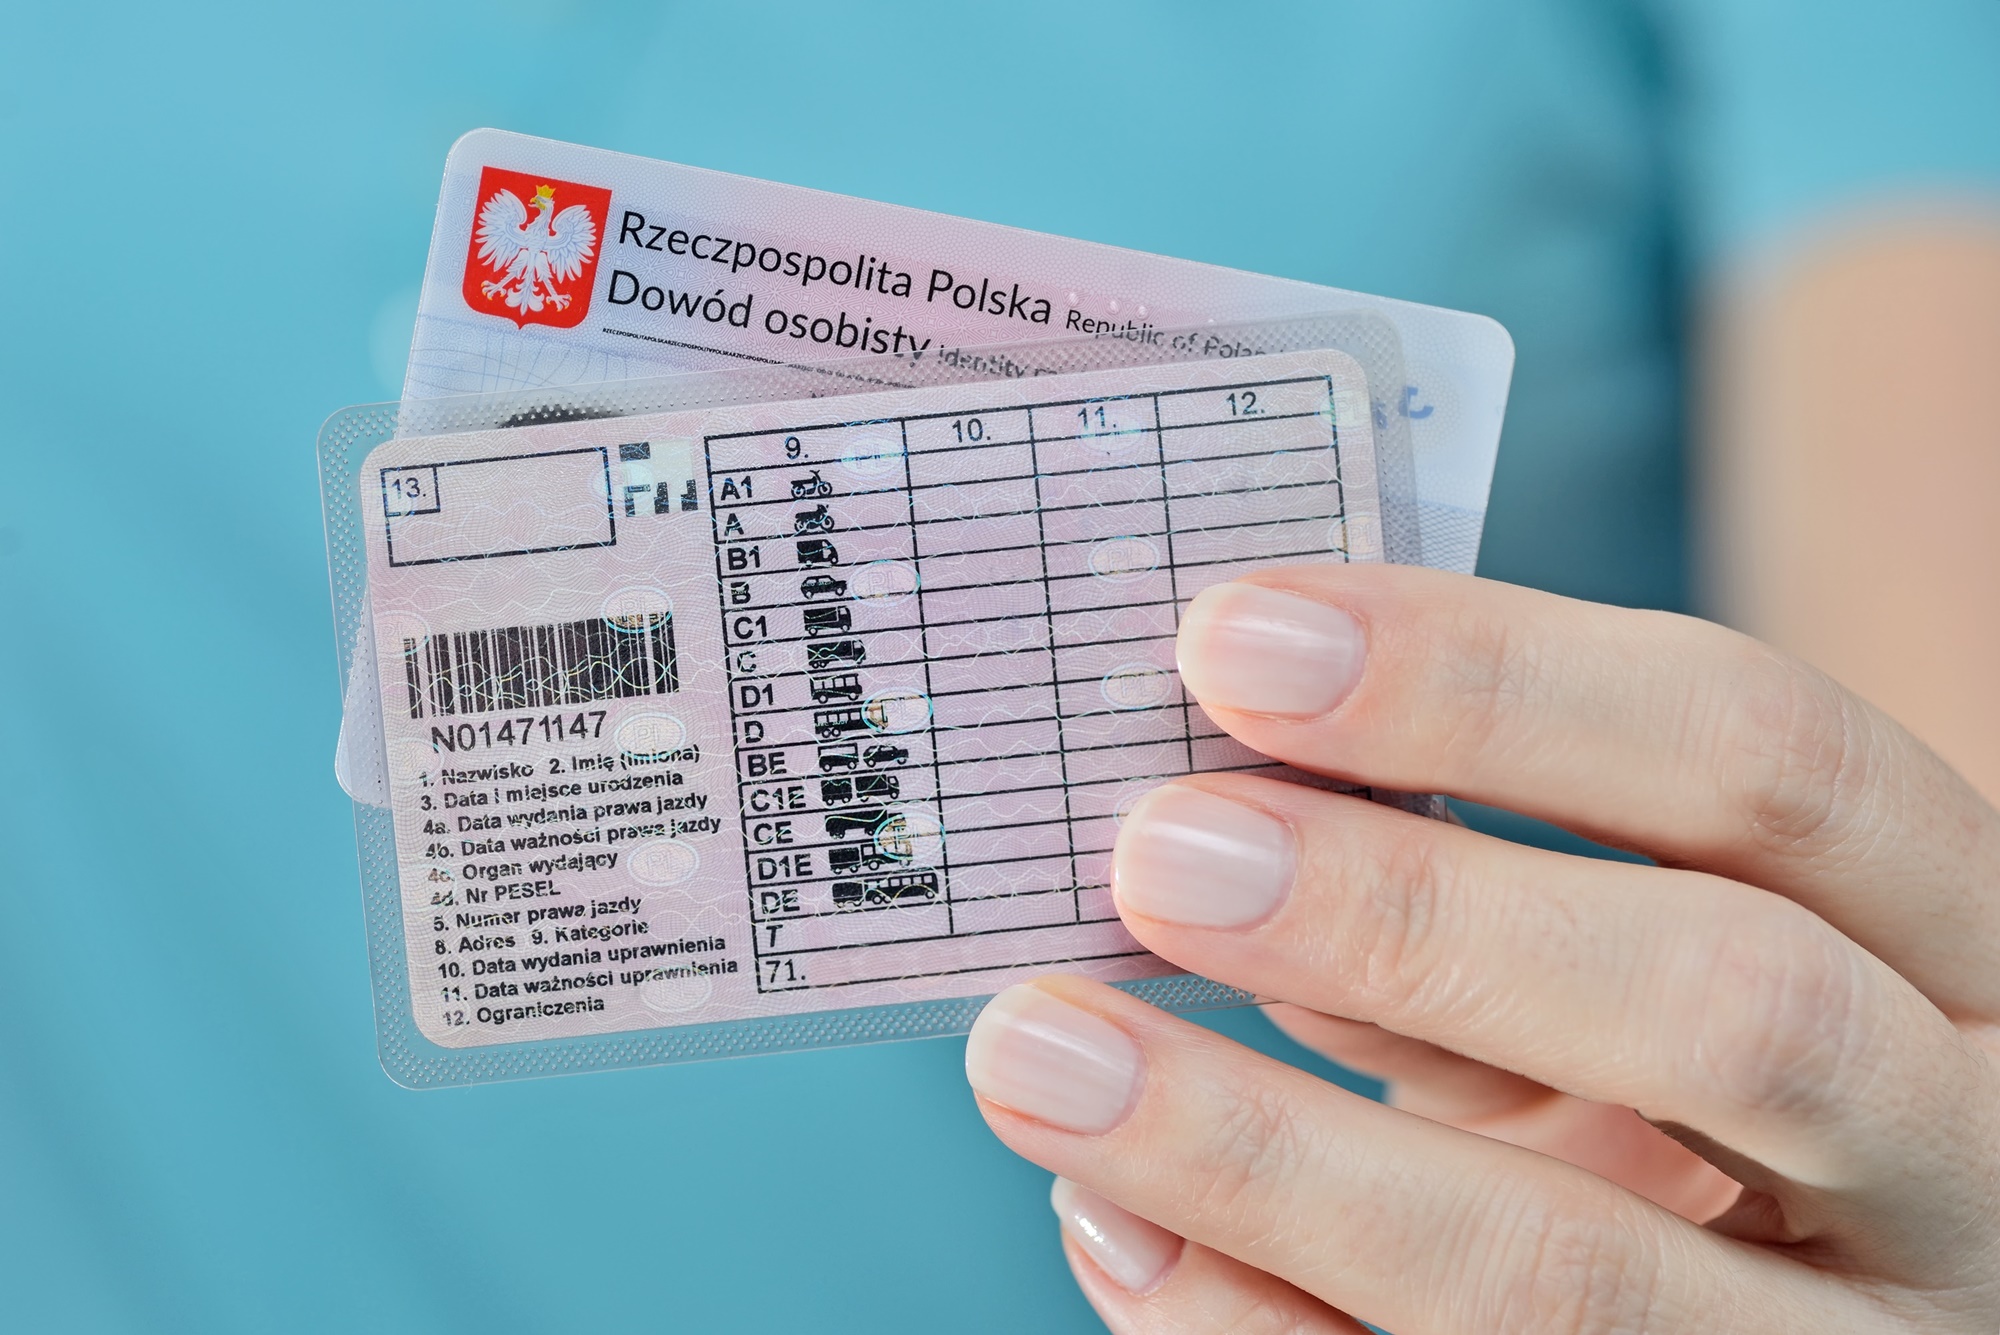 Polski dokument prawa jazdy oraz dowód osobisty